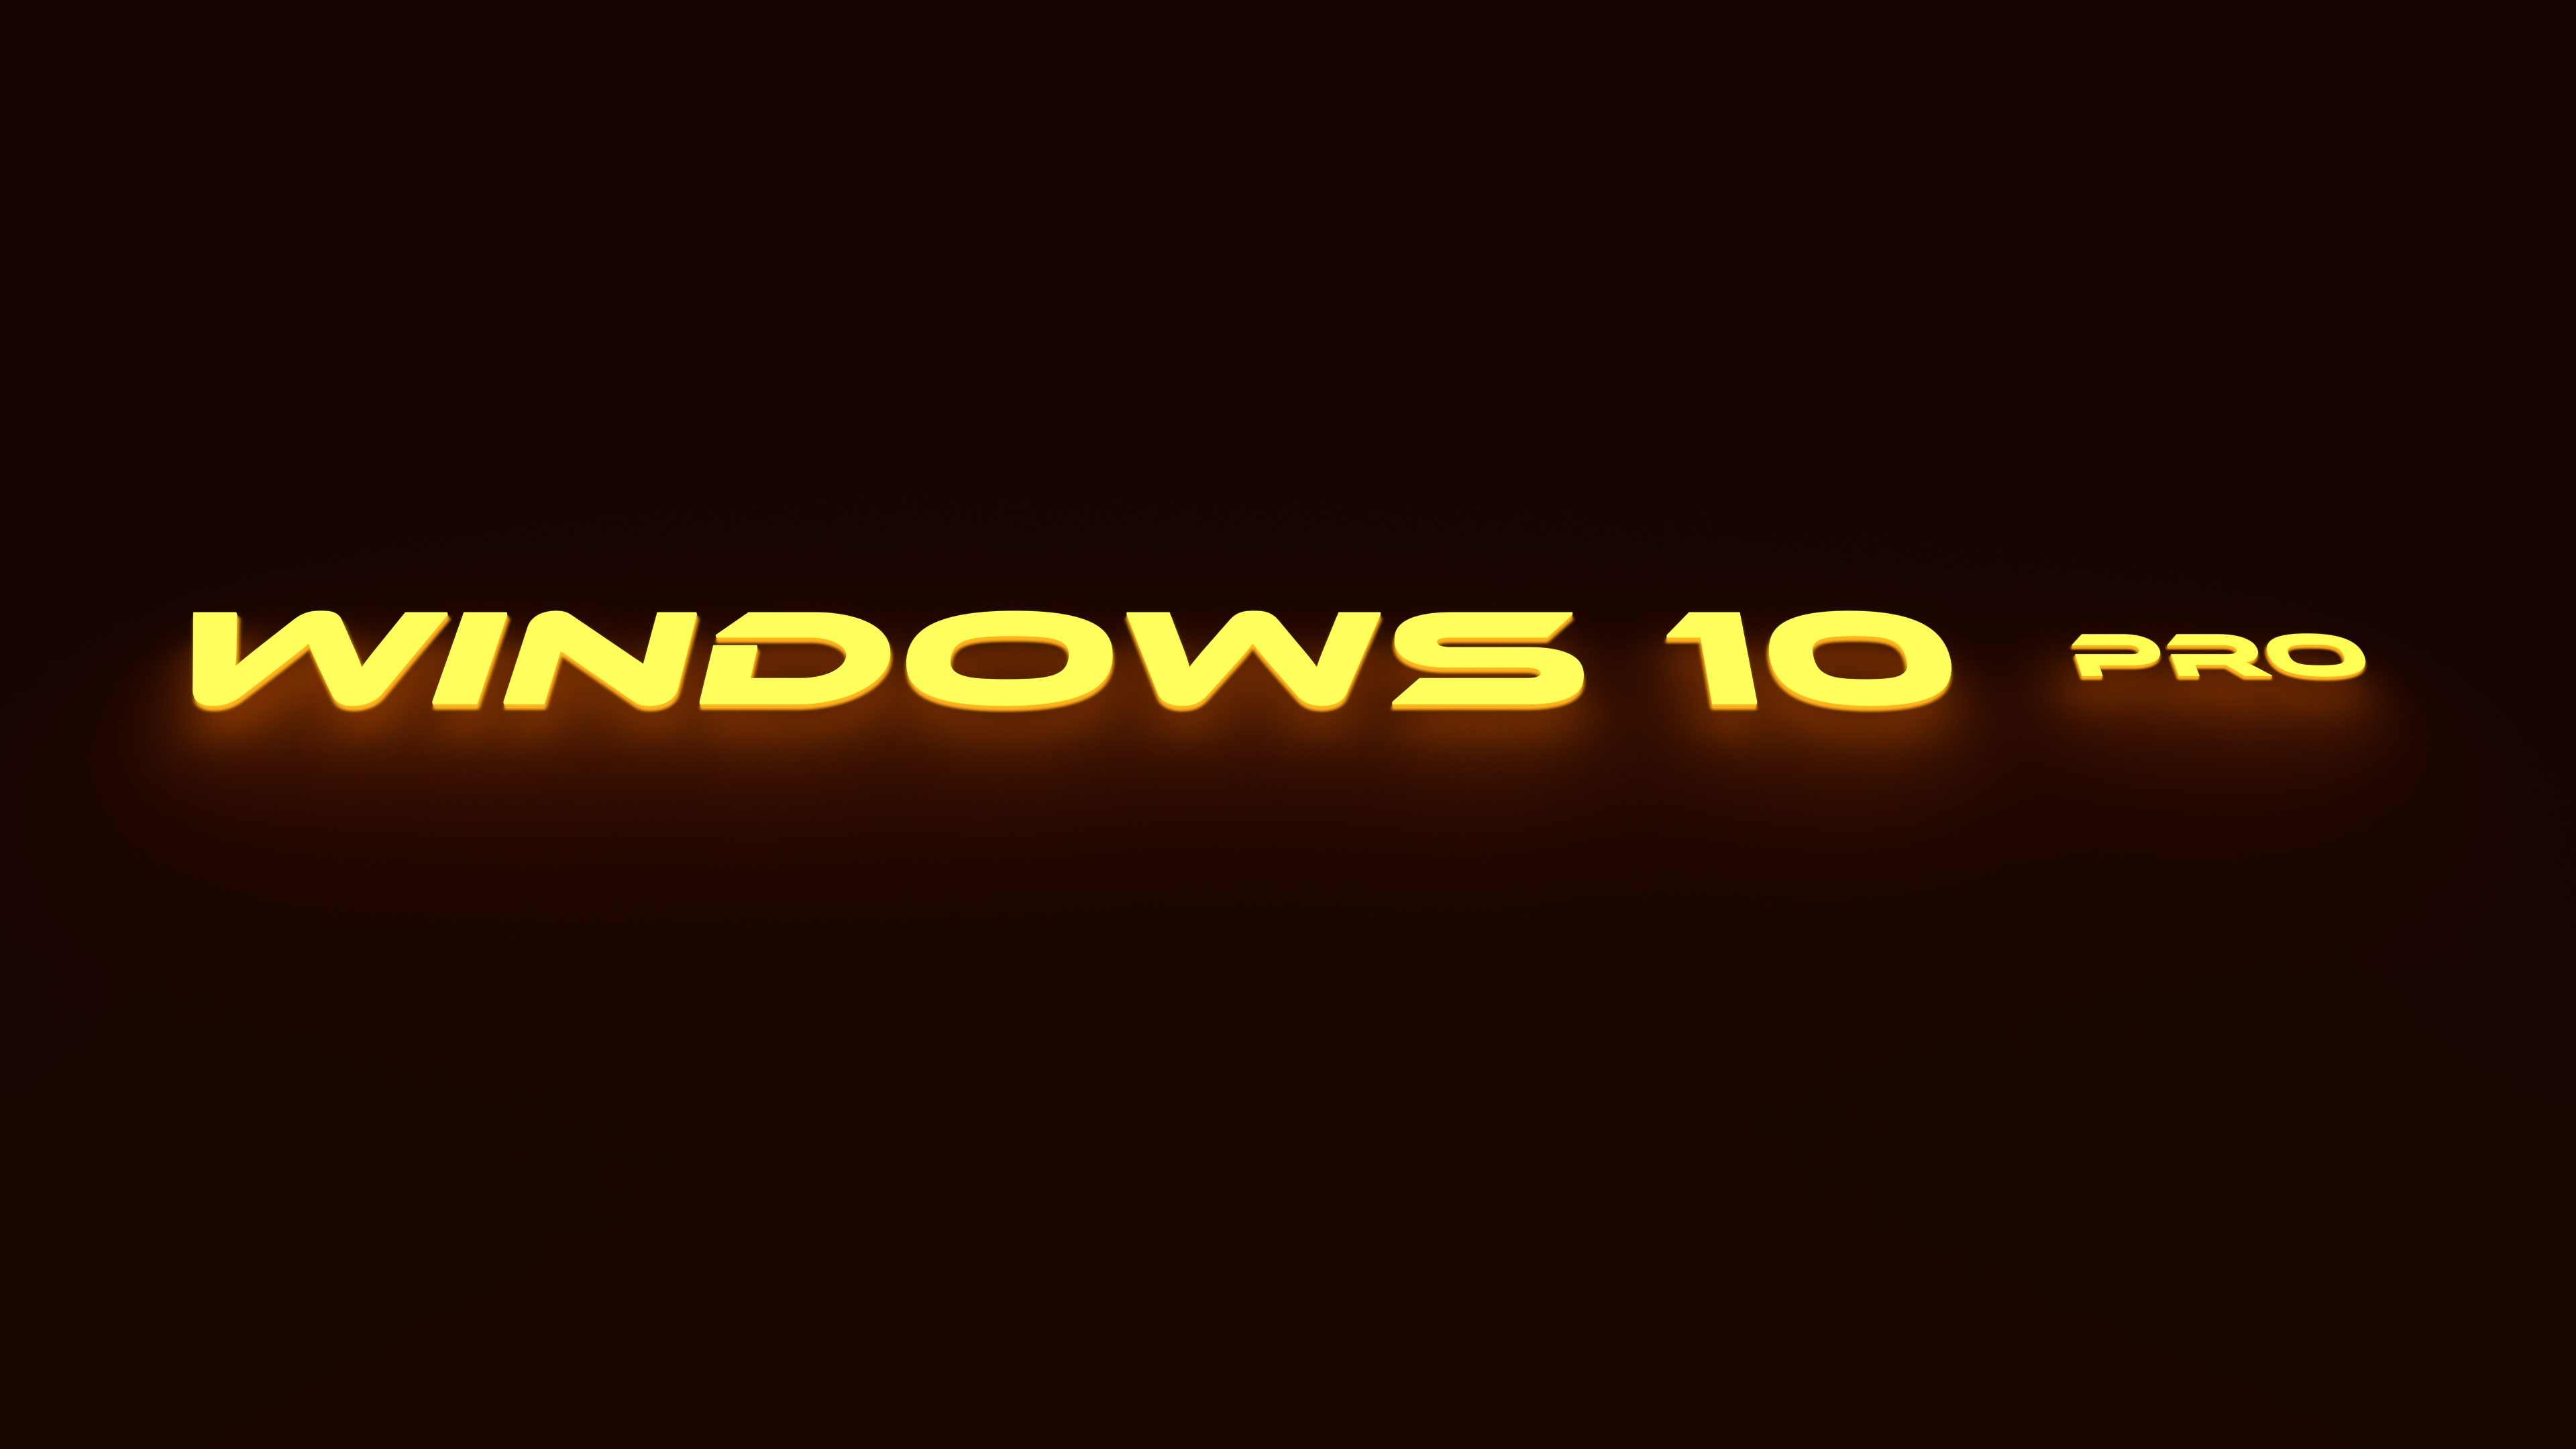 Windows 10 Pro màu vàng rực sáng bởi viktik - Hình nền Windows 10 Pro với gam màu vàng rực sáng được thiết kế bởi viktik sẽ làm nổi bật chiếc máy tính của bạn và đặc biệt là giúp trang trí cho bàn làm việc của bạn trở nên rực rỡ và sinh động hơn bao giờ hết.